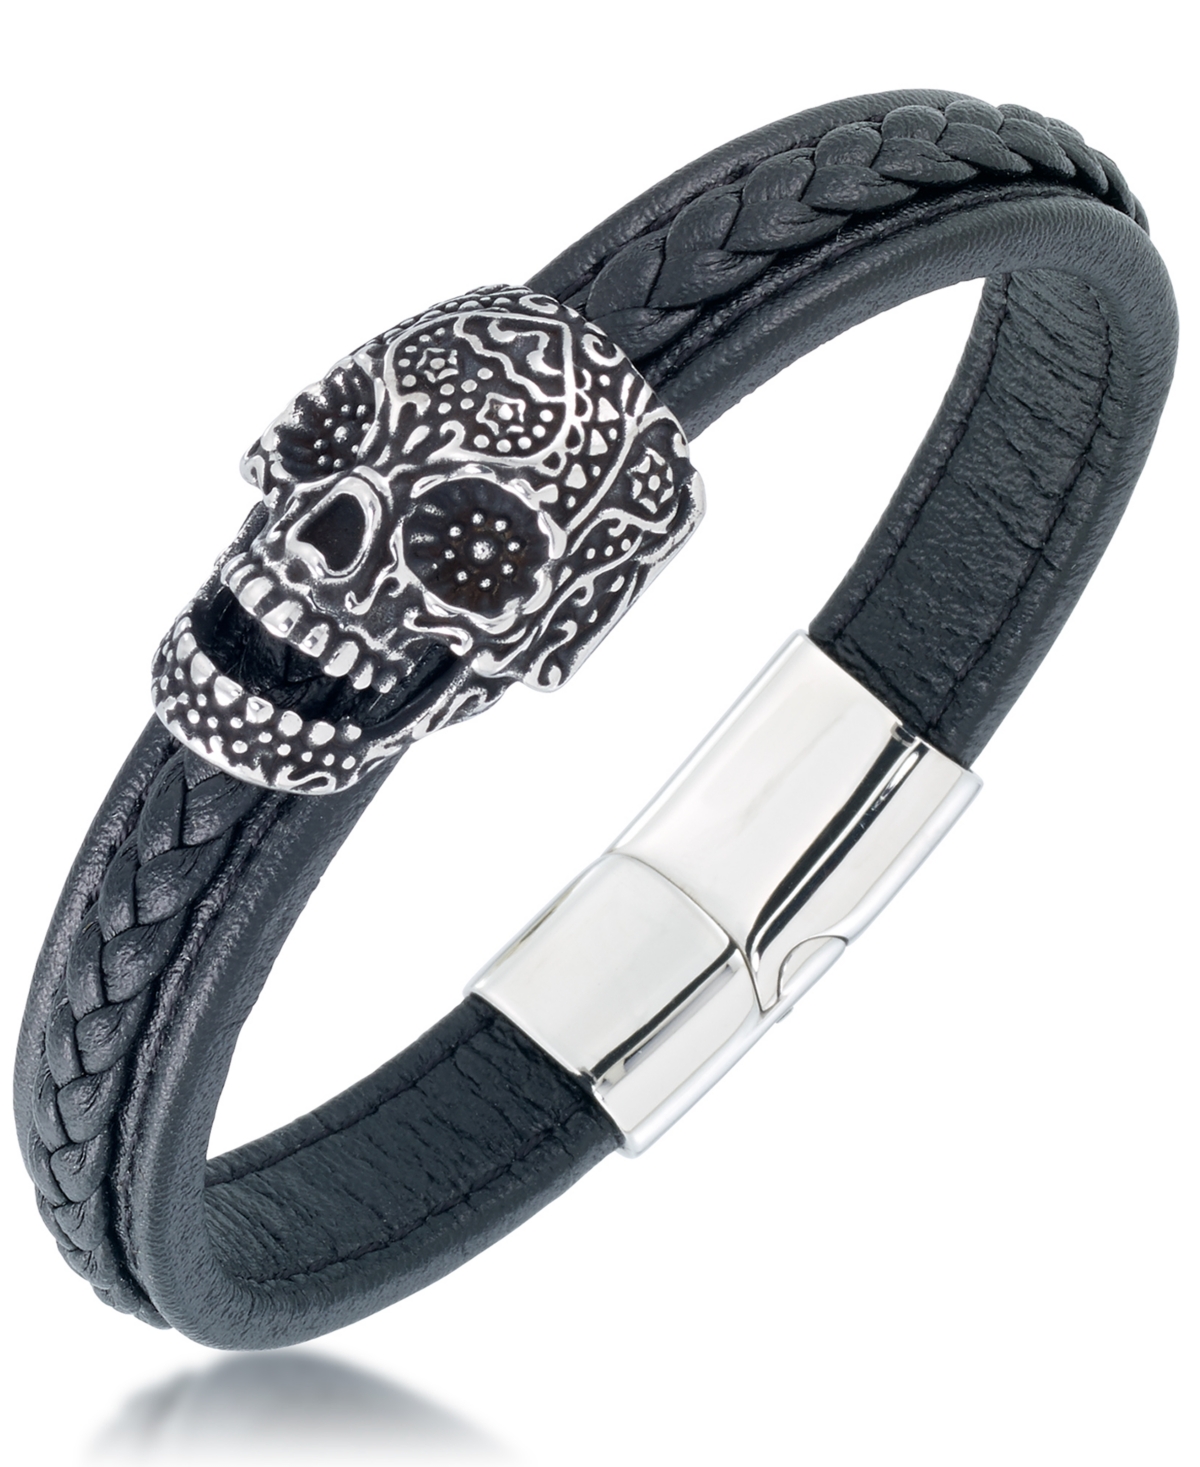 Men's Ornamental Skull Leather Bracelet in Stainless Steel - Stainless Steel